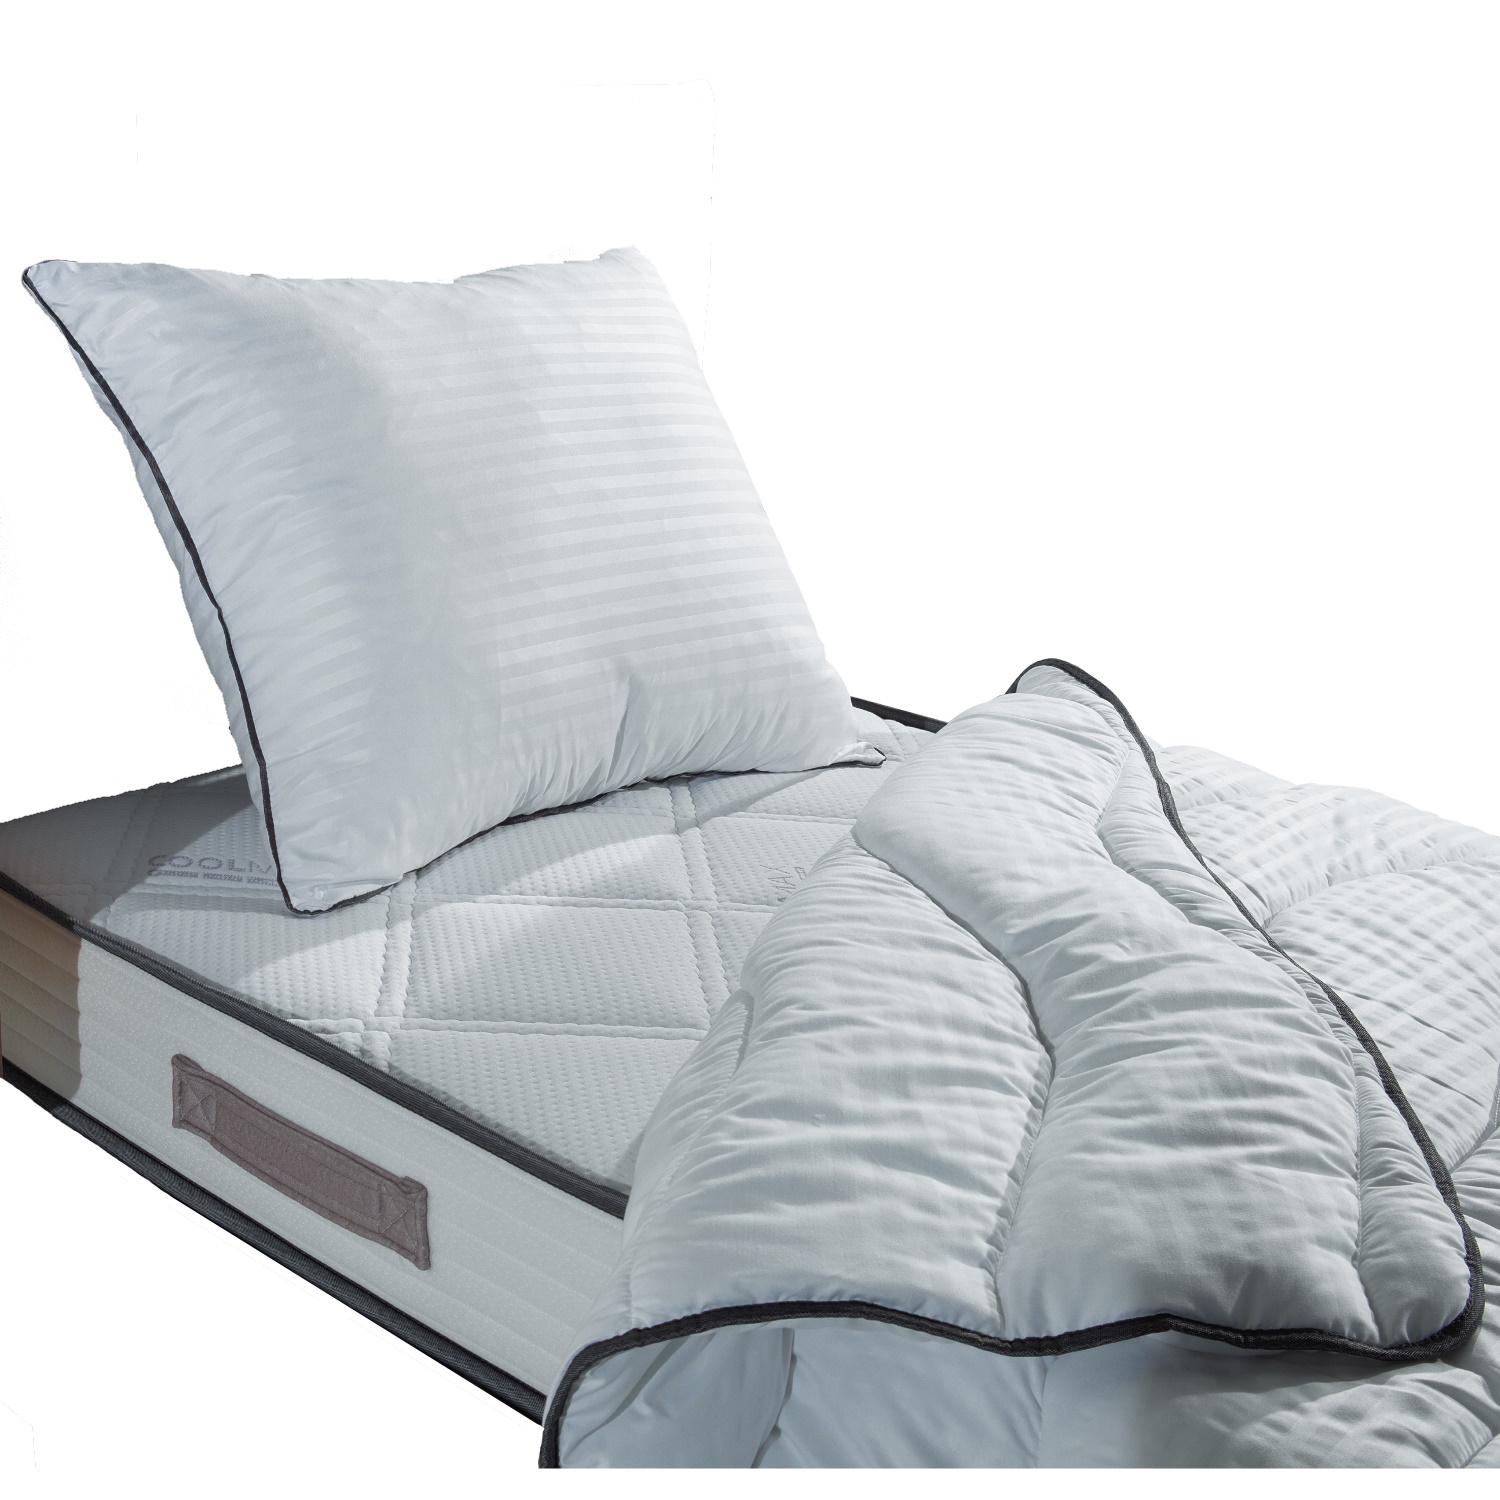 Horzel te rechtvaardigen vervolgens Aanbieding - Max Sleep Matras nu met Gratis Dekbed & Kussen 90x200 - direct  online bestellen?